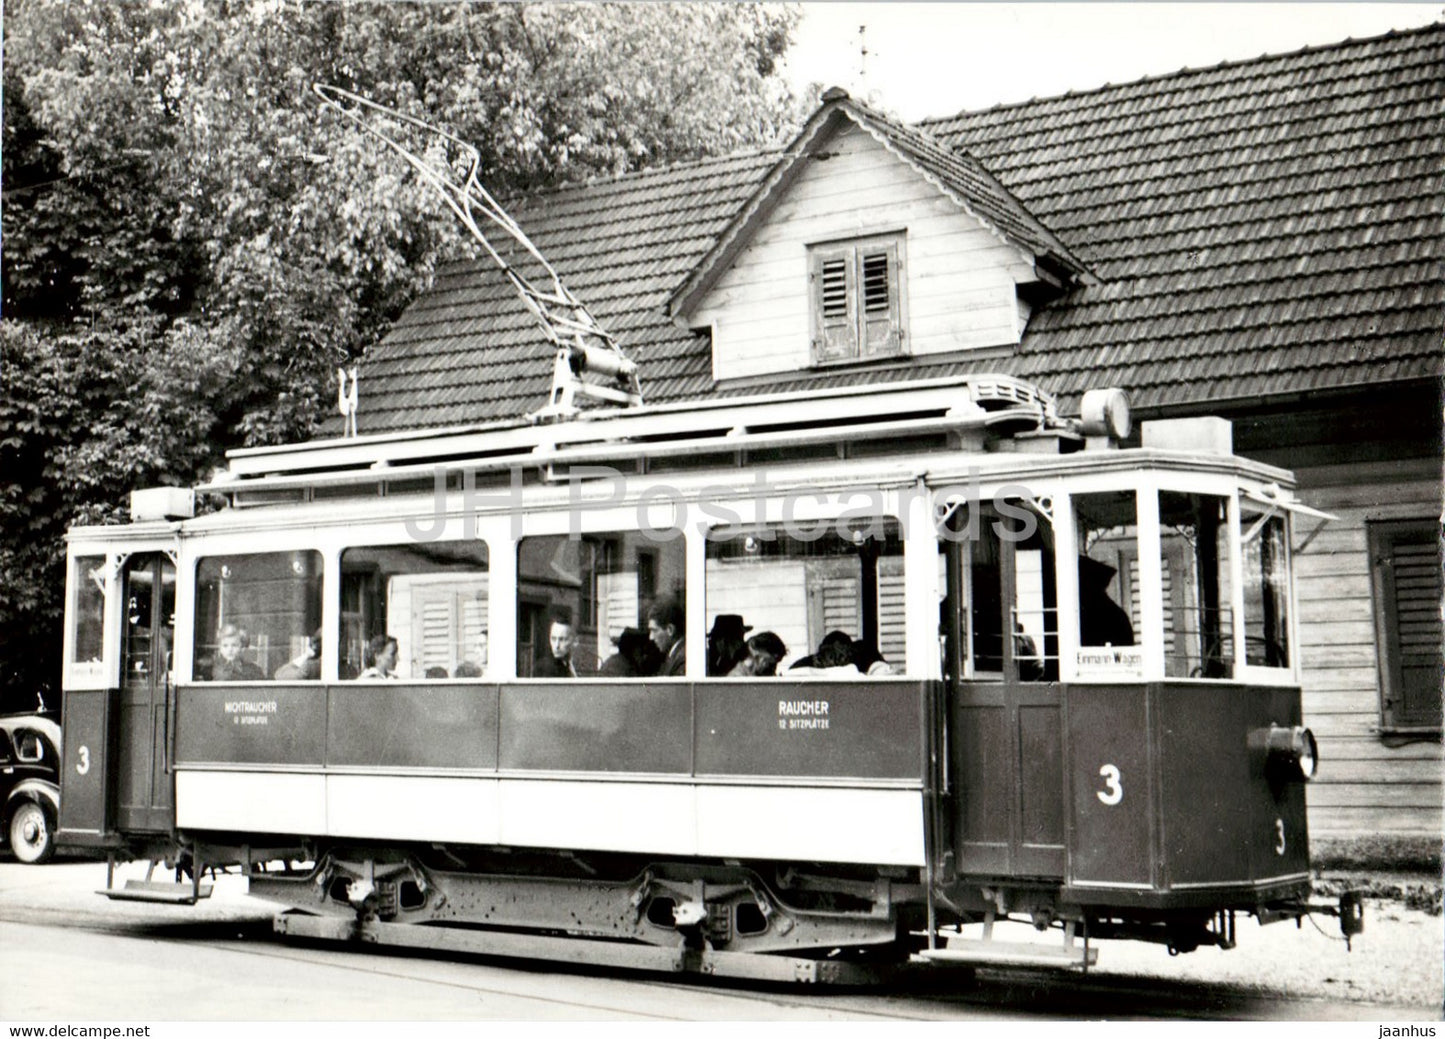 Heerbrugg - Linie Diepoldsau - tram - old postcard - Switzerland - unused - JH Postcards